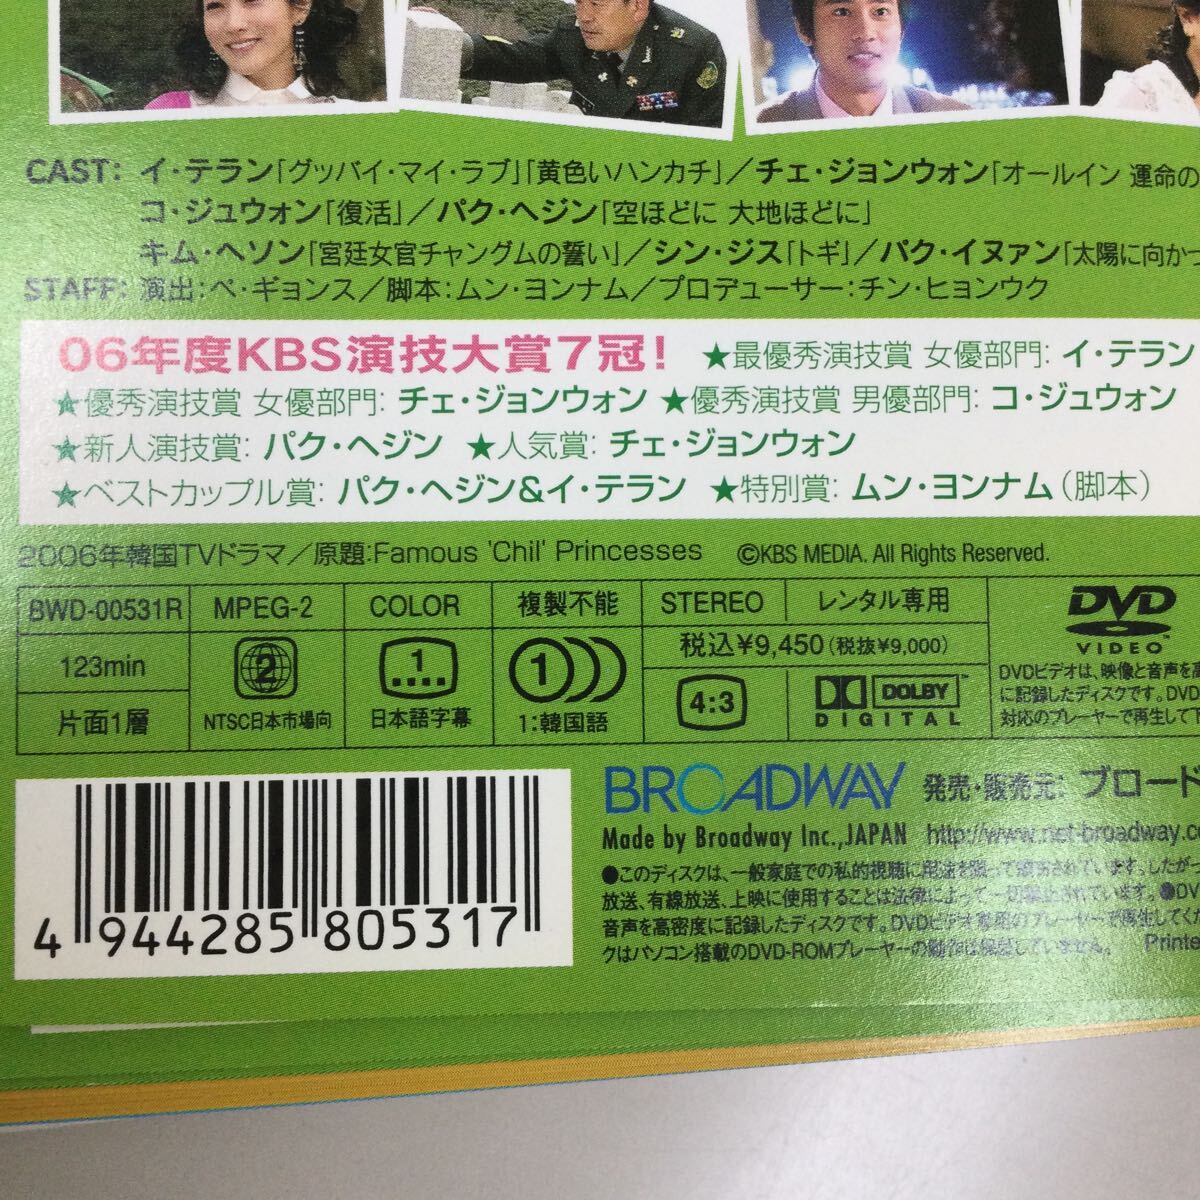 03115 噂のチル姫 全40巻セット レンタル落ち DVD 中古品 ケースなし ジャケット付きの画像2